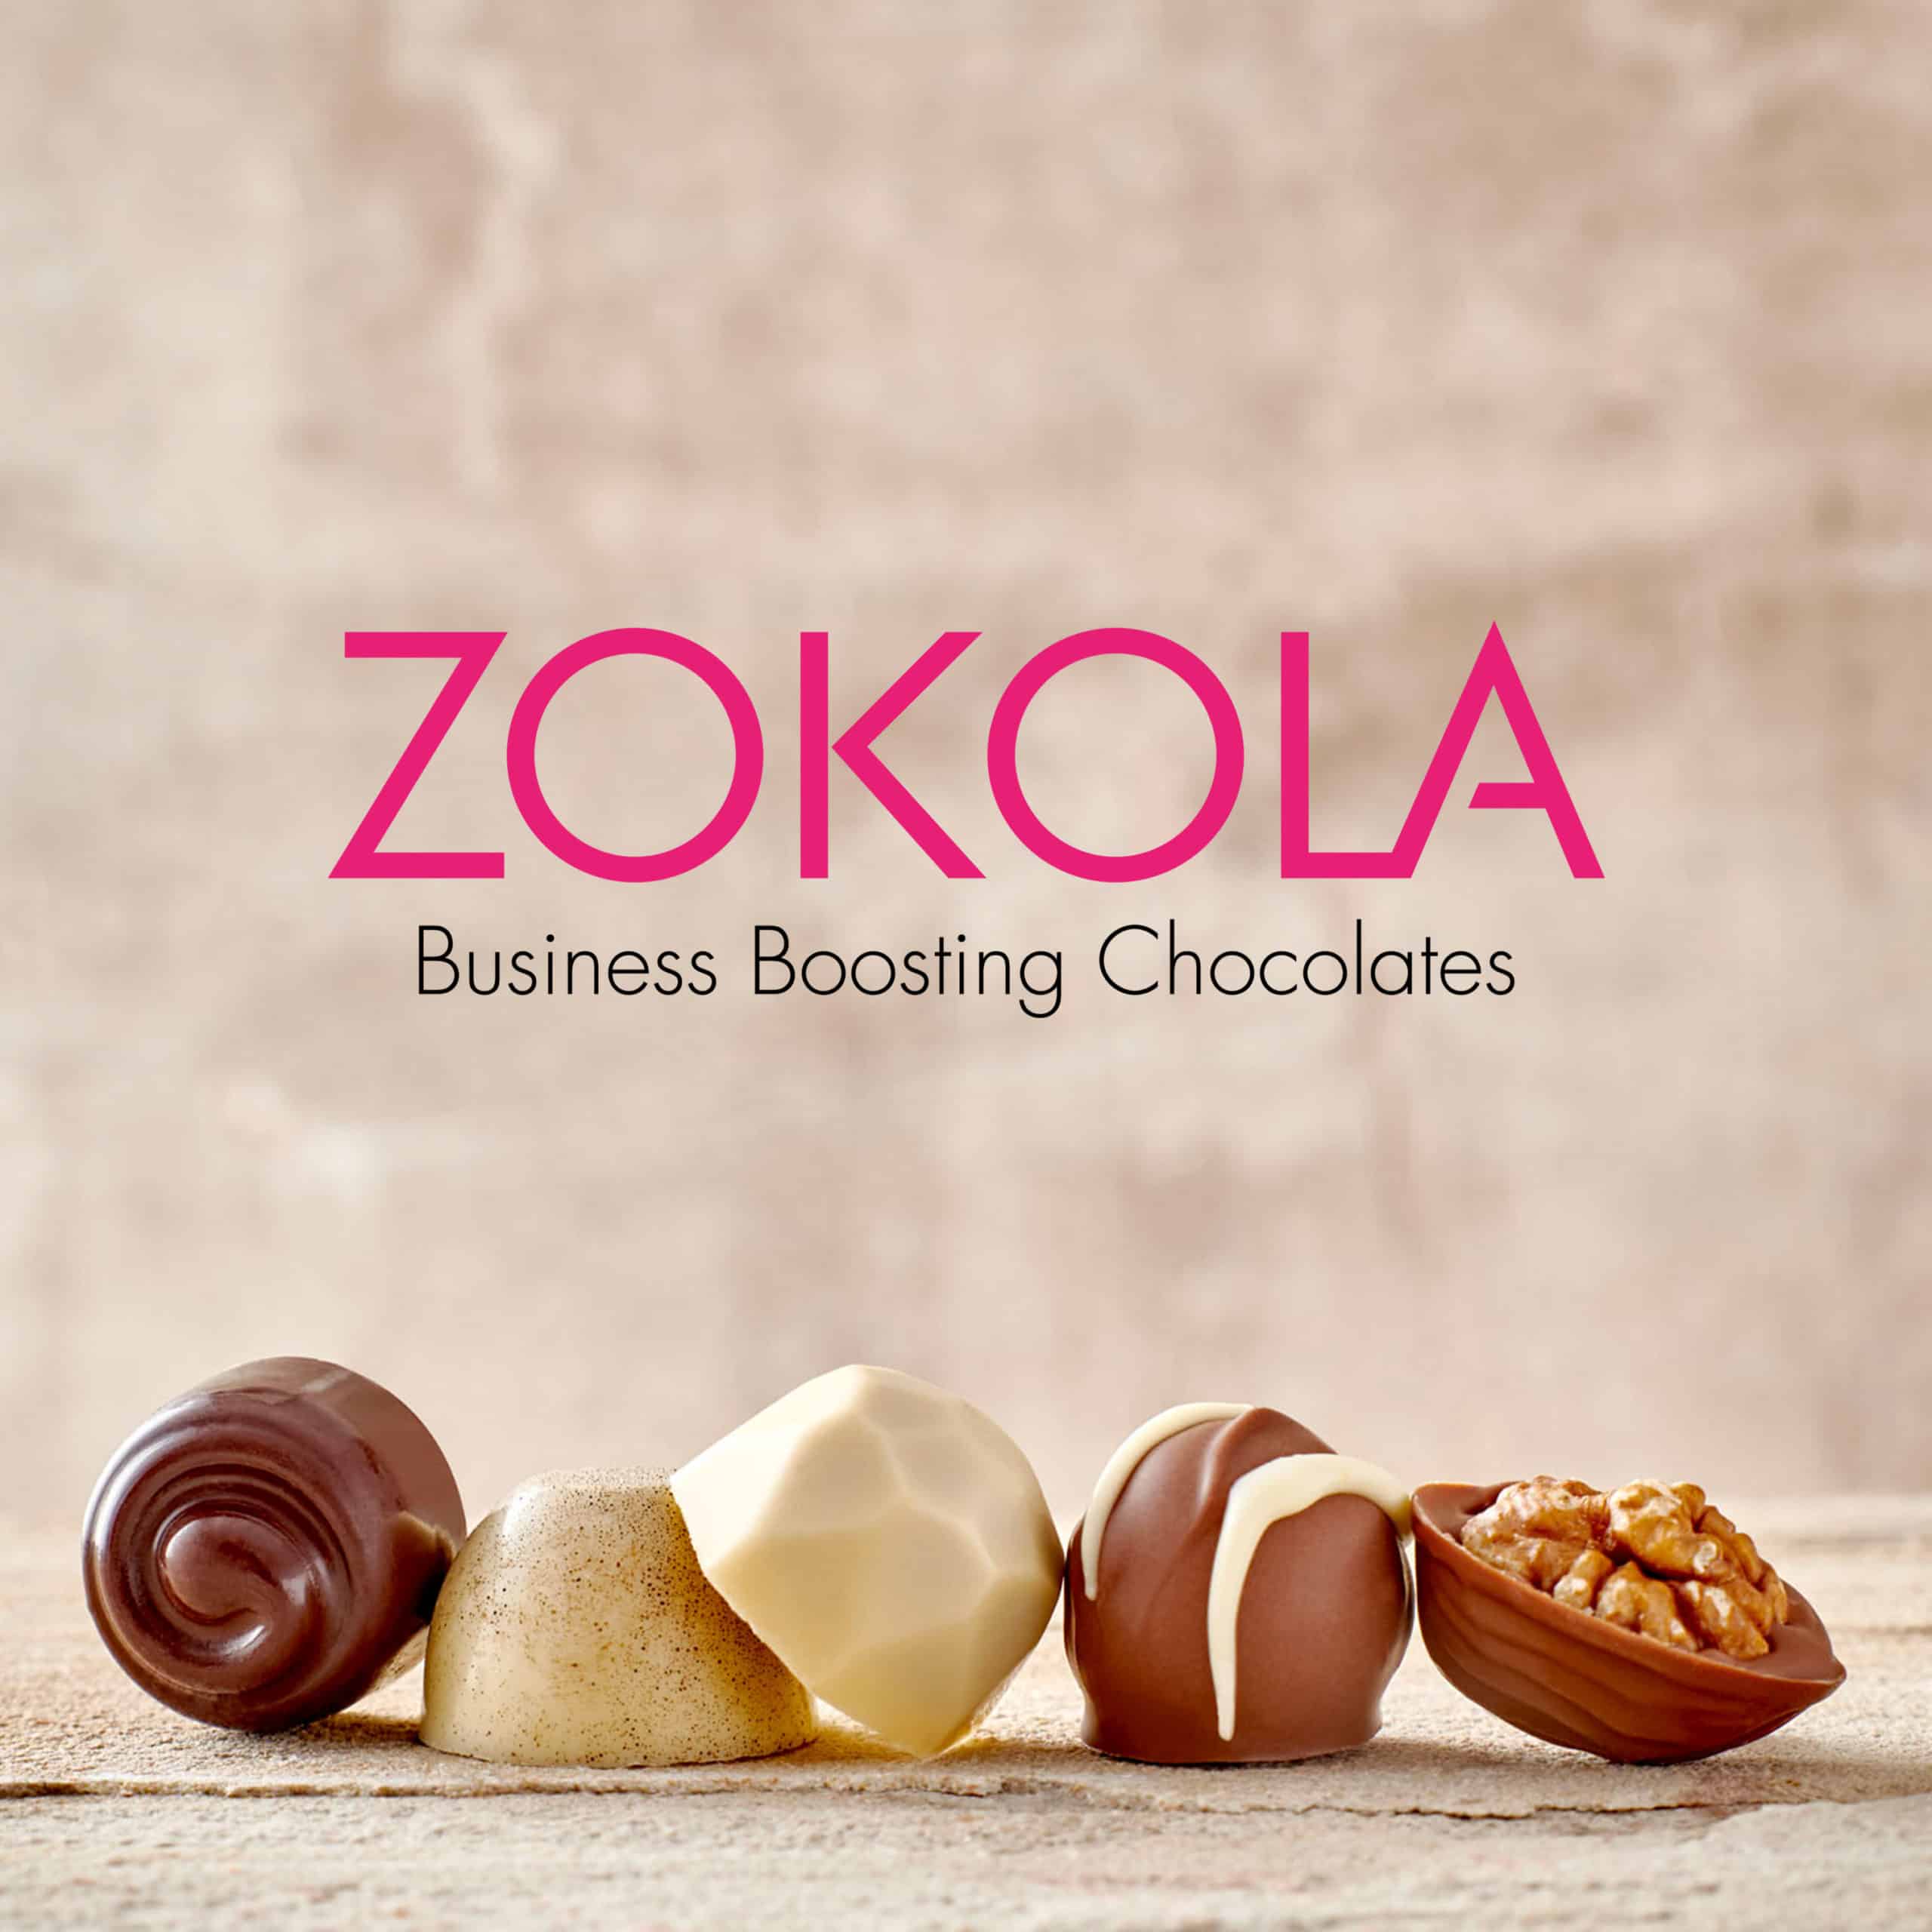 Nieuwe website voor Zokola